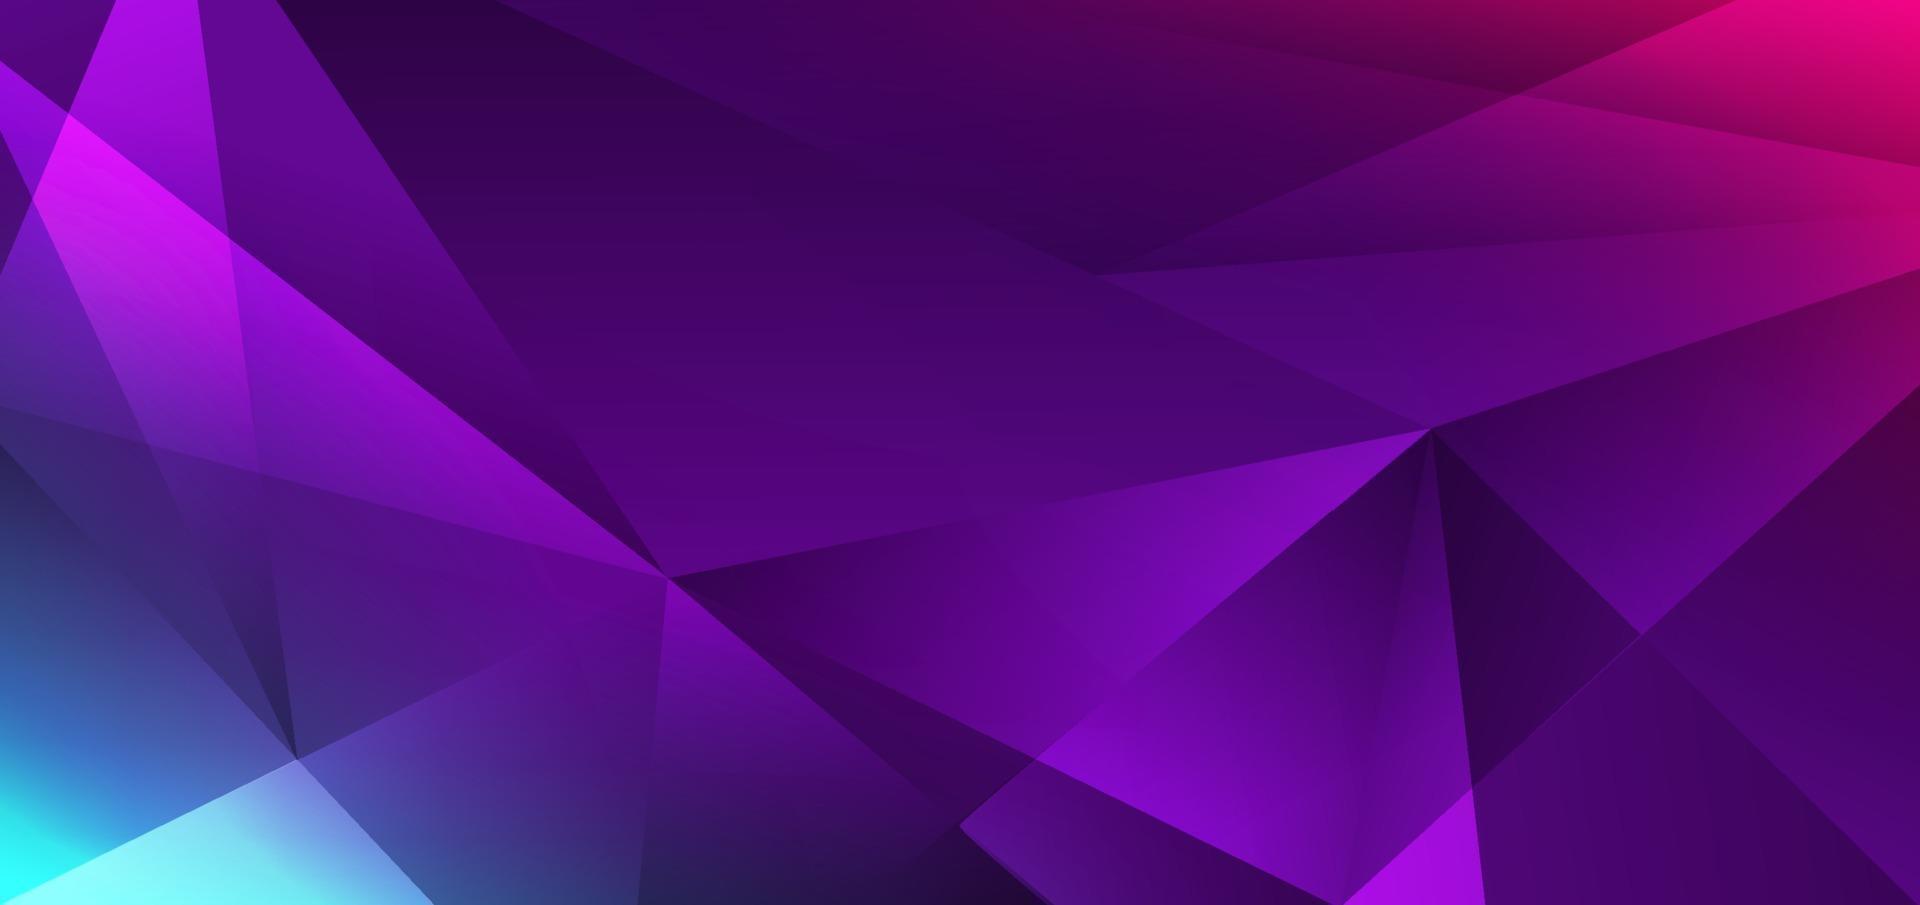 abstrait moderne bleu, rose, violet faible polygone dégradé fond géométrique et texture vecteur